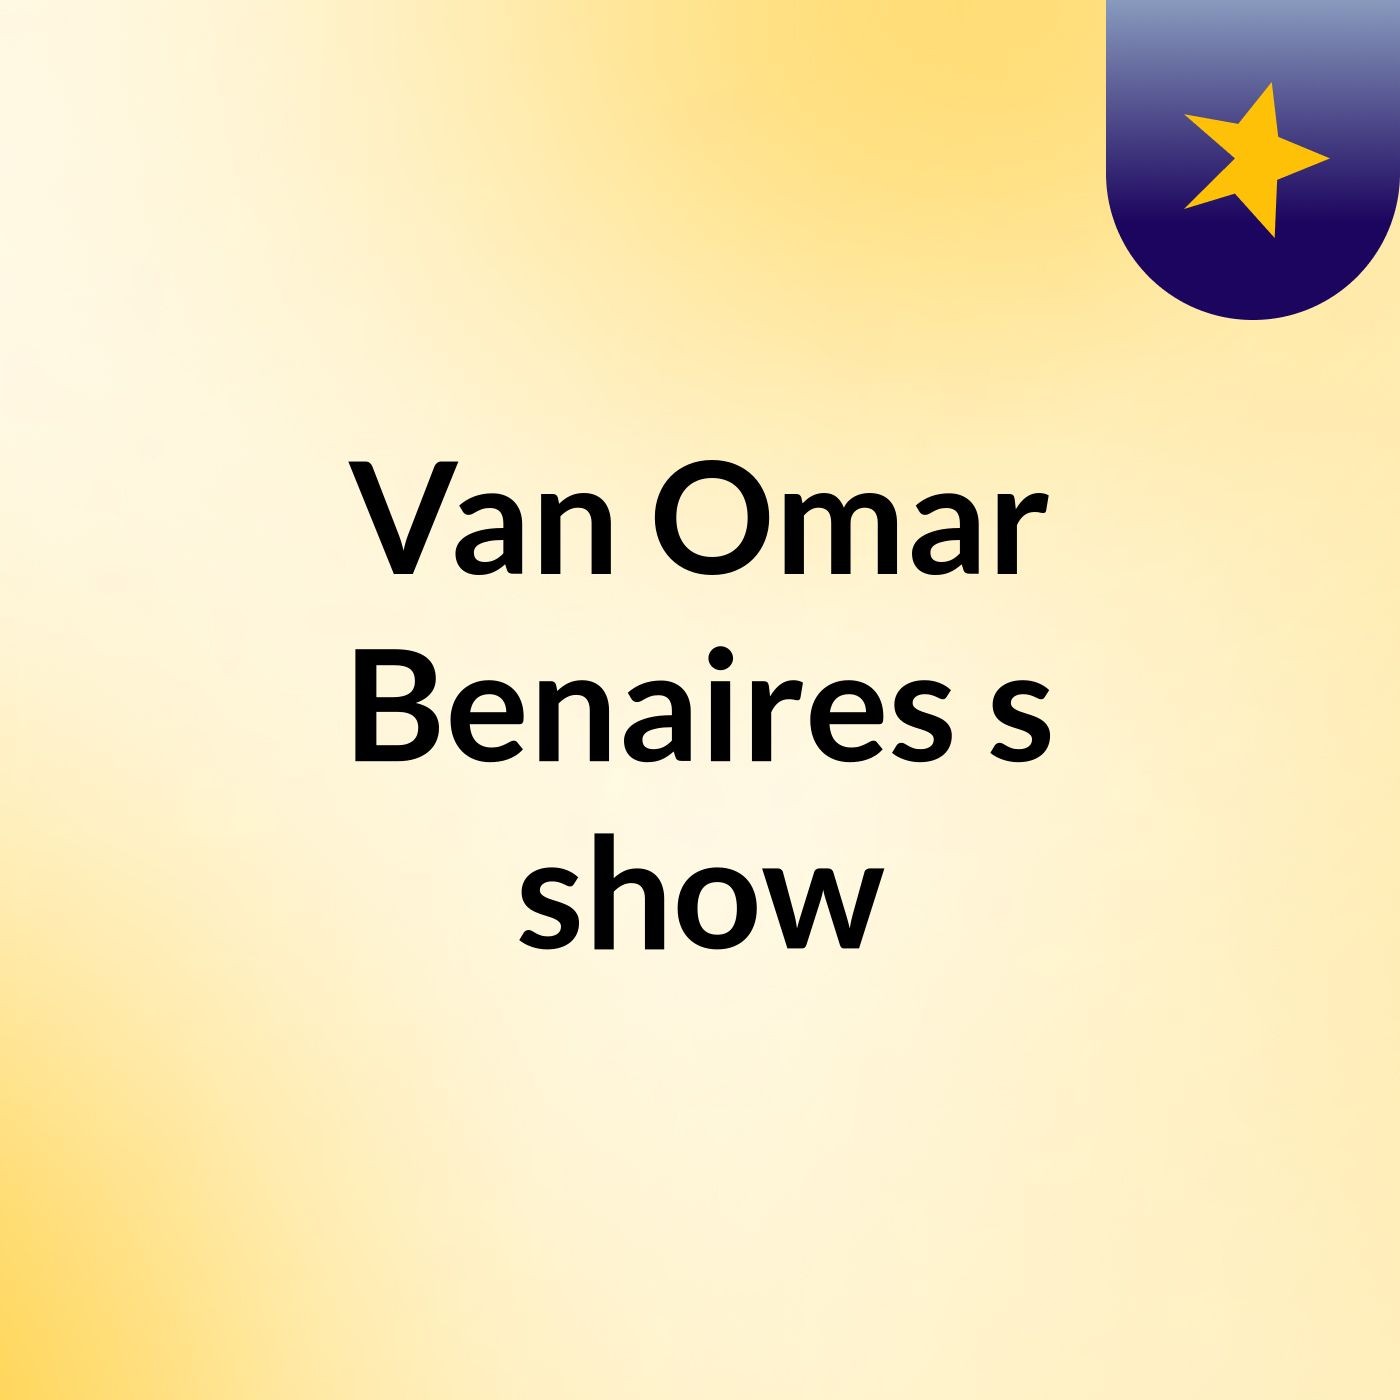 Van Omar Benaires's show